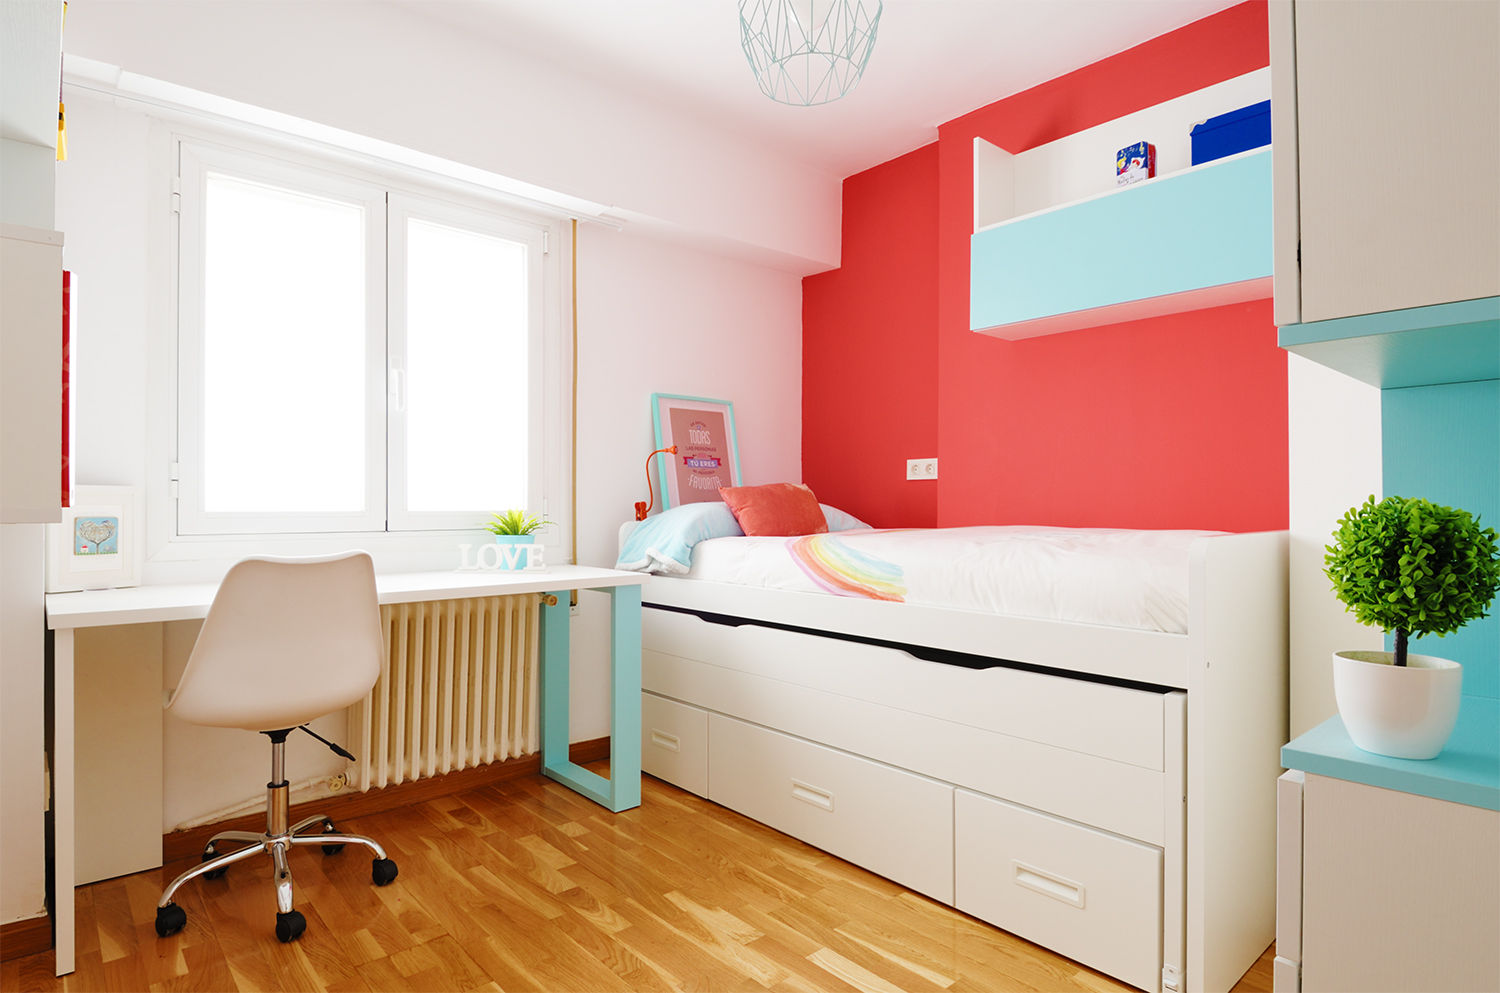 Un dormitorio de una niña de 11 años, Noelia Villalba Interiorista Noelia Villalba Interiorista Modern nursery/kids room